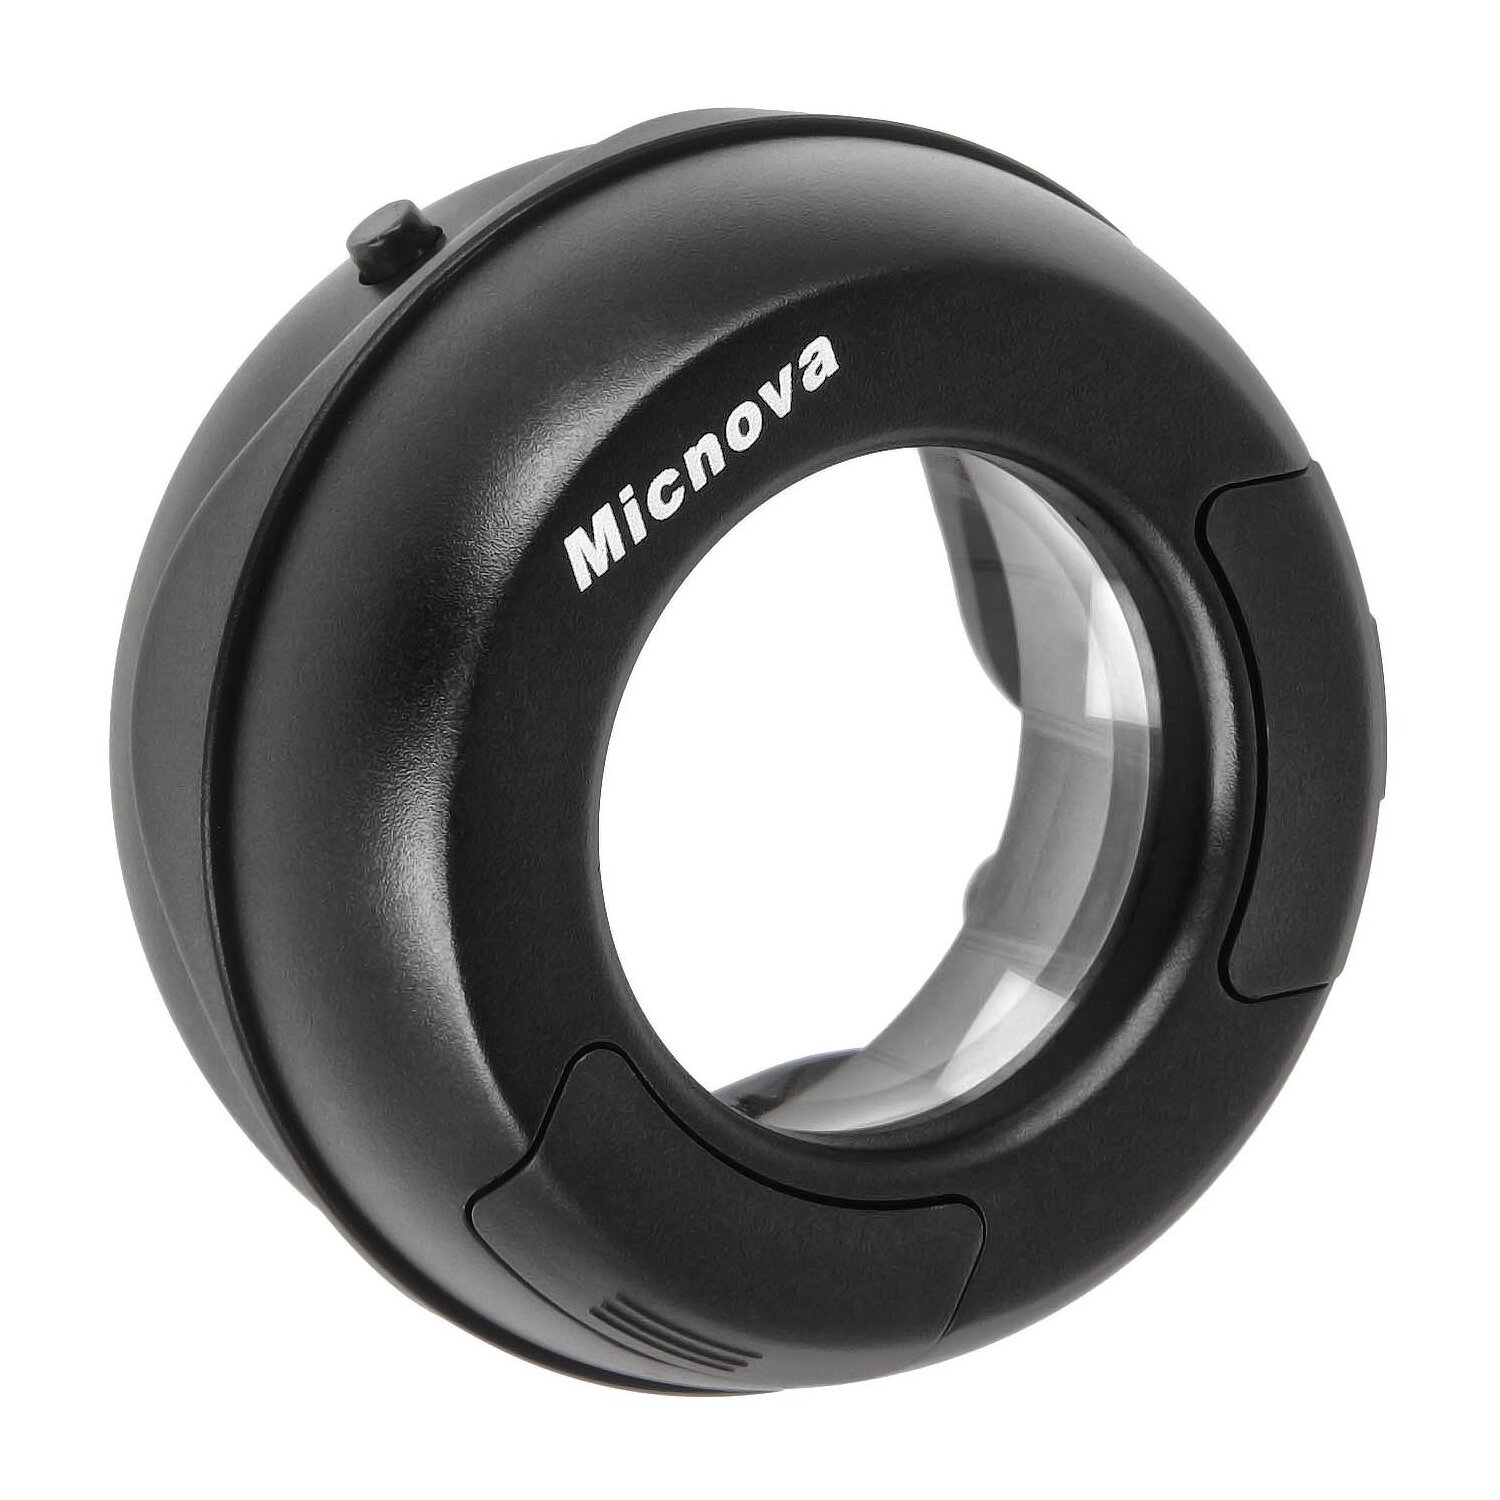 Micnova MQ-7X Sensorlupe mit 7-facher Vergroeßerung und 6 hellen LEDs fuer eine perfekte Sensorreinigung - inkl. Reinigungstuch